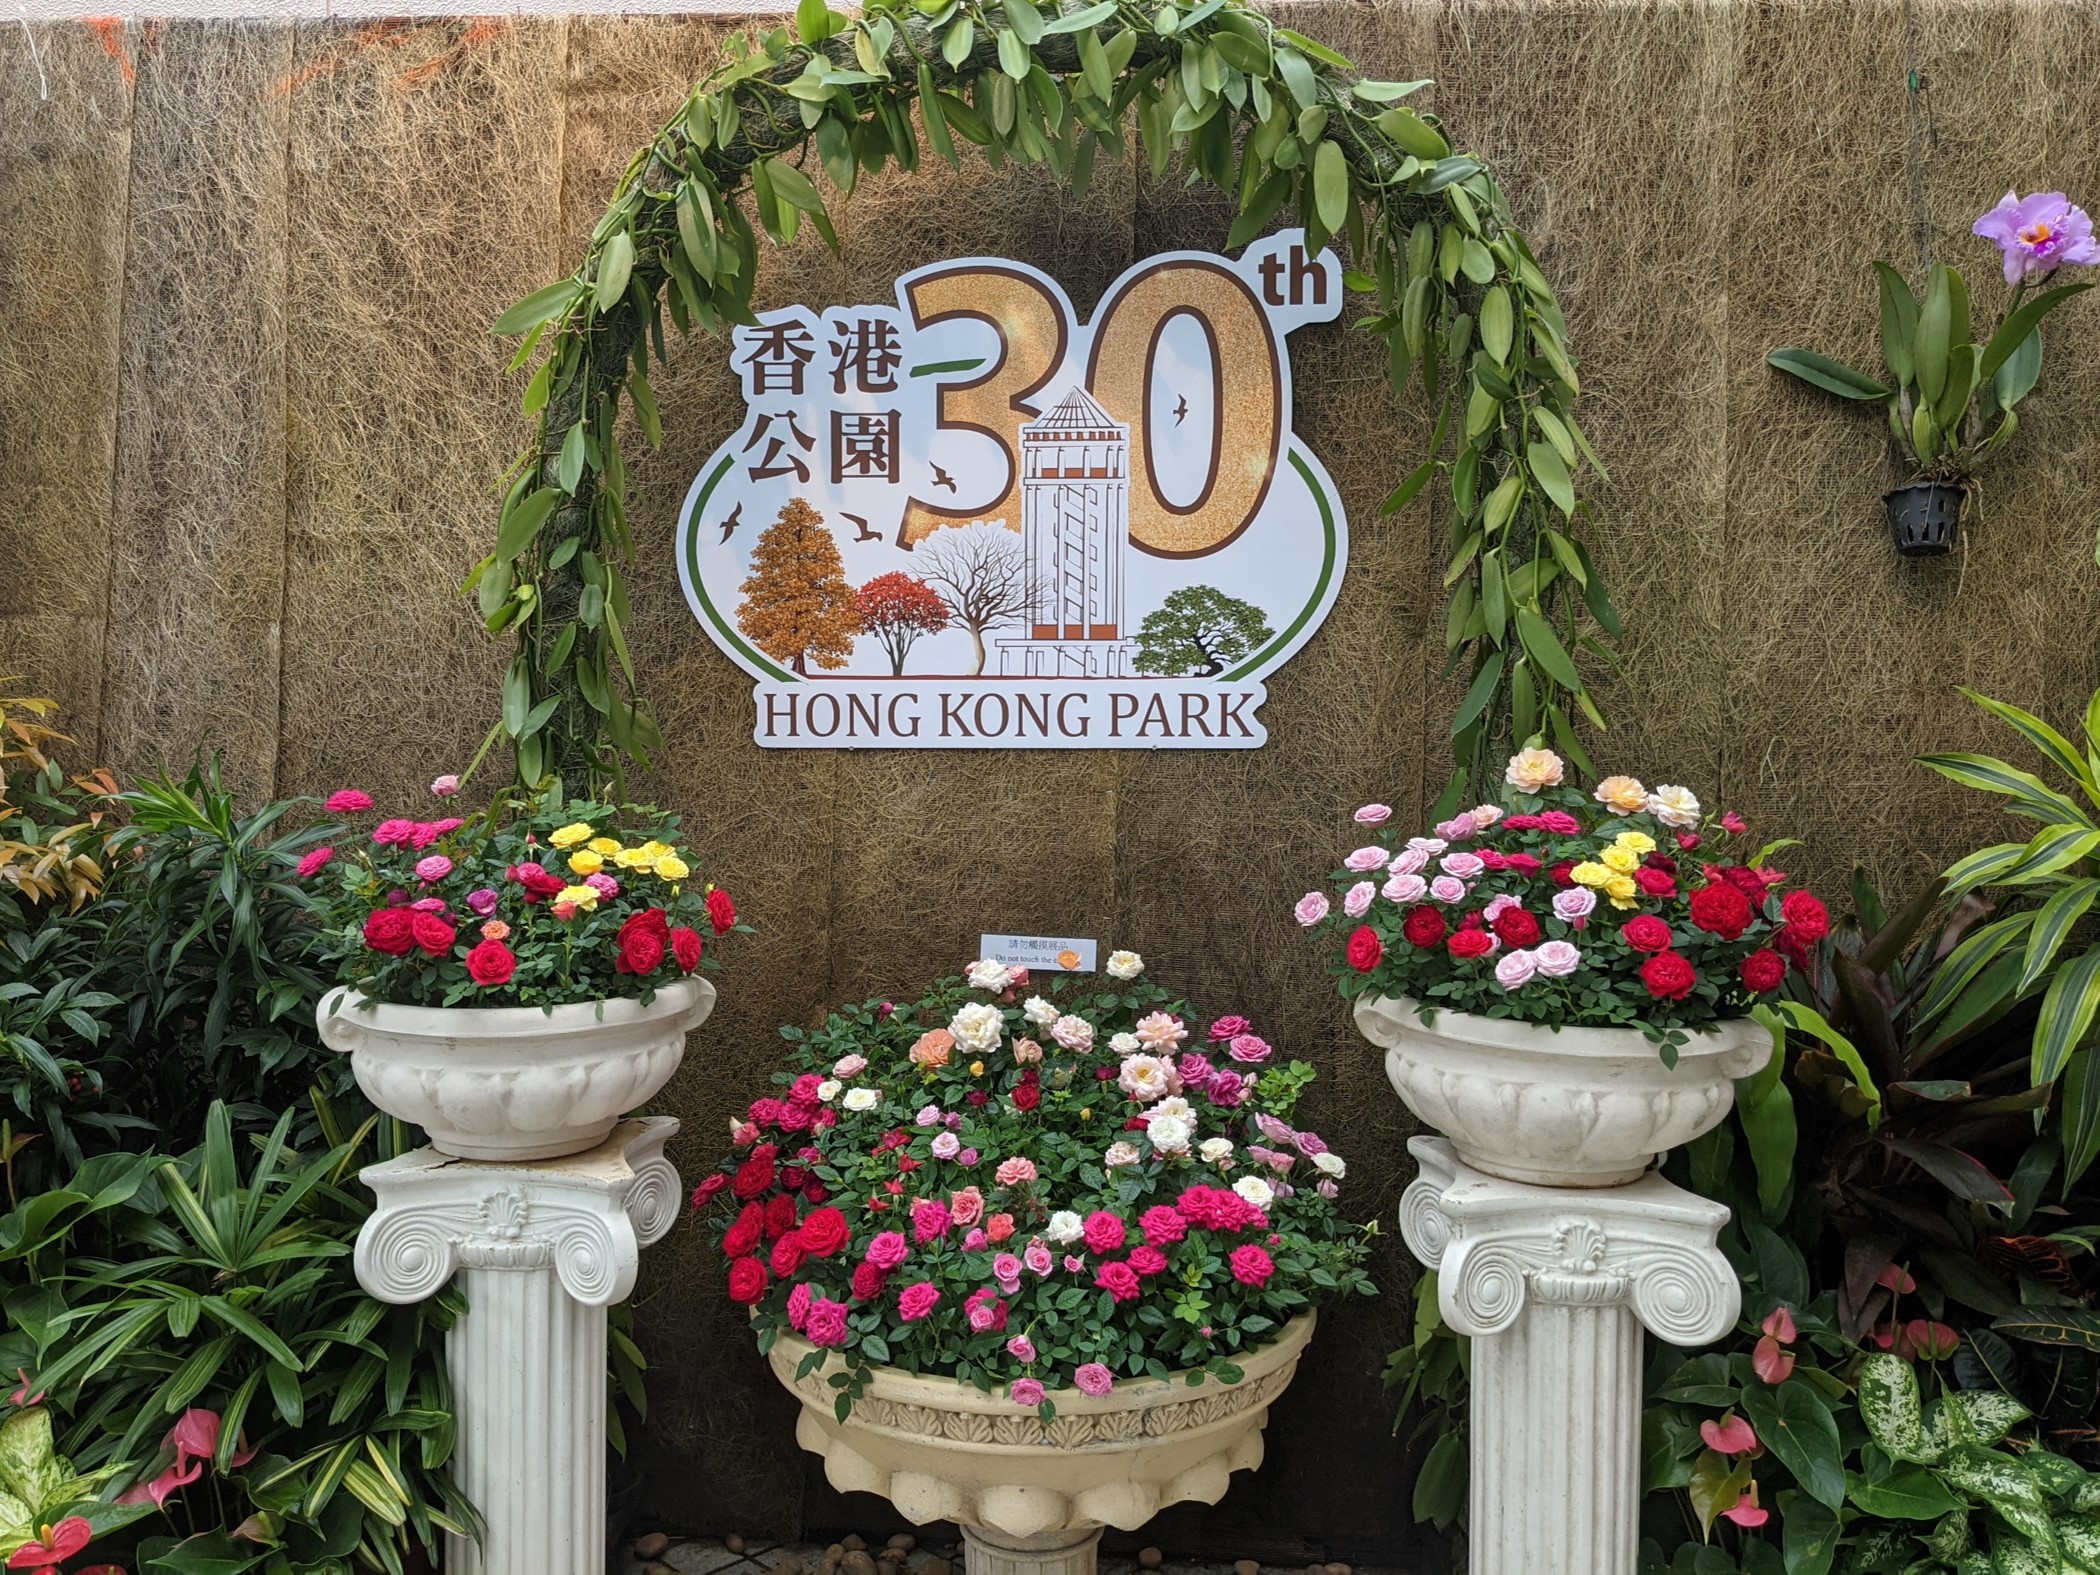 香港公园「蔷薇科植物展」